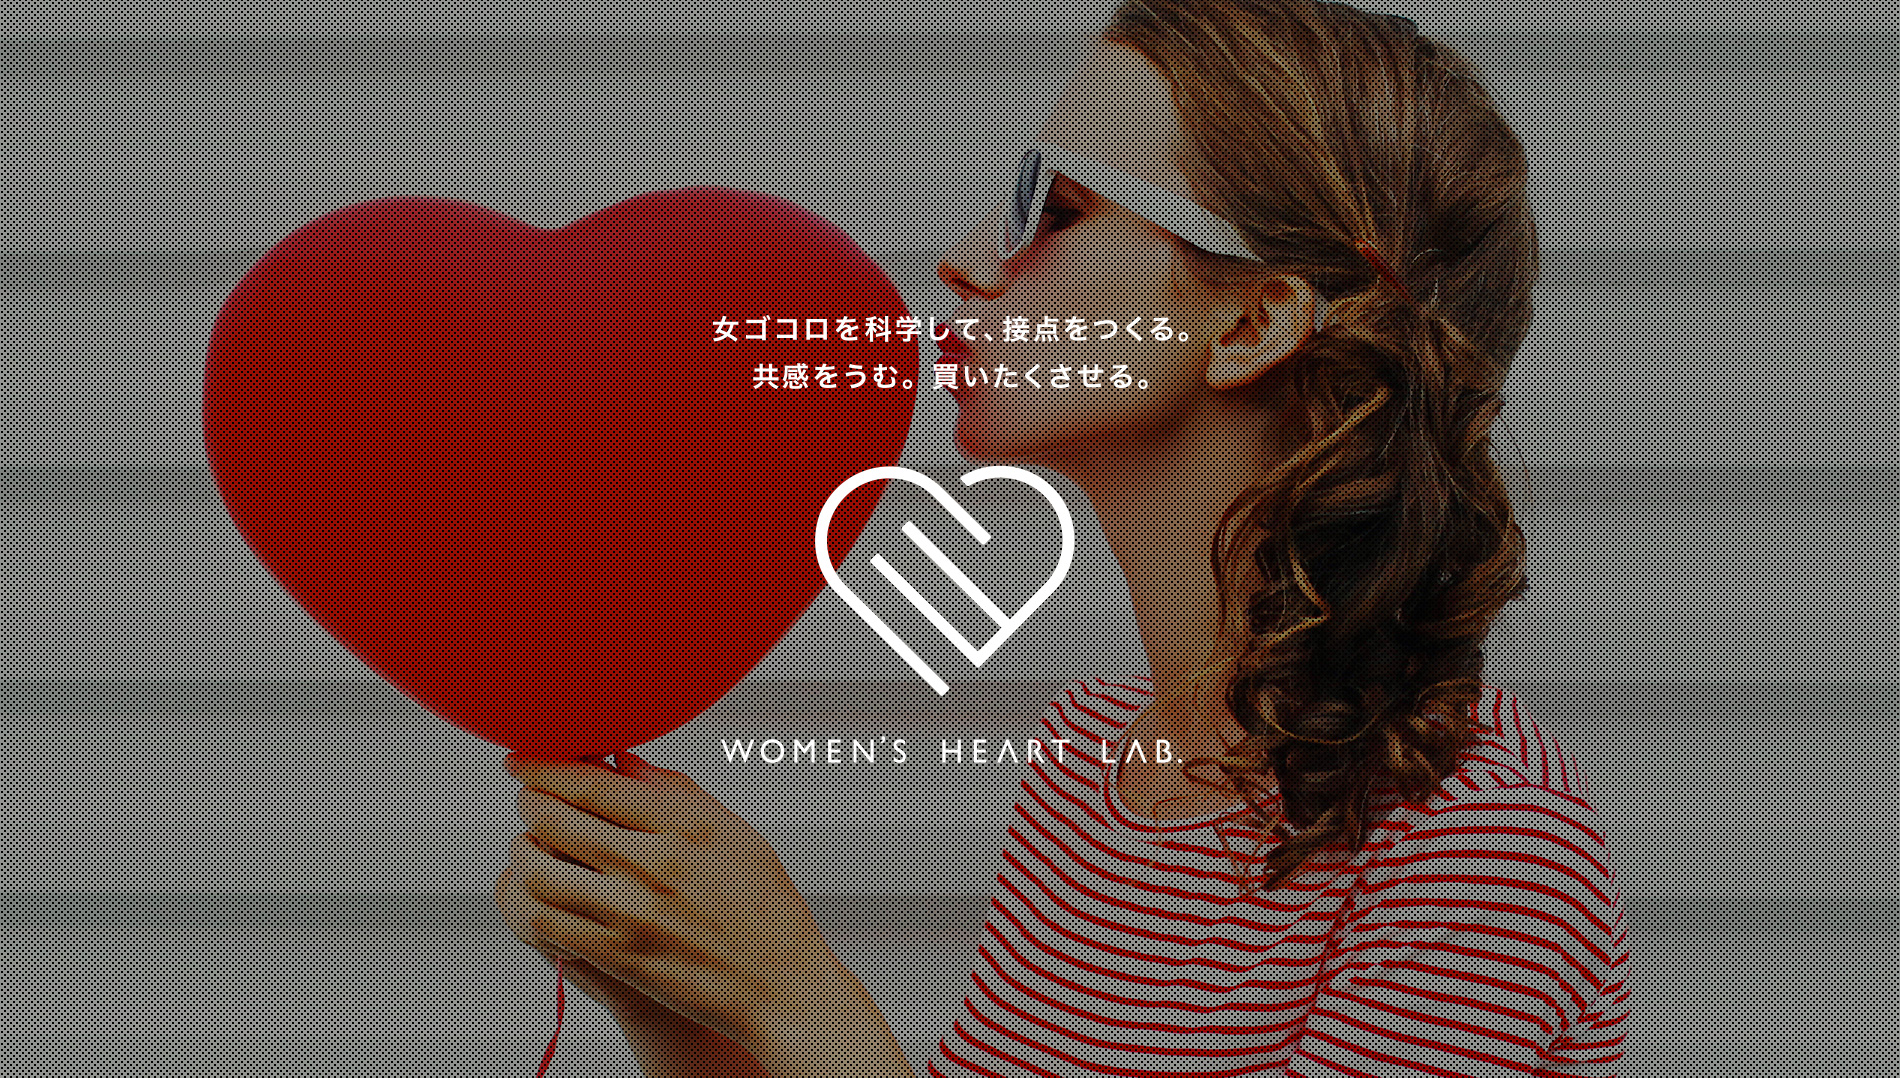 記事「女ゴコロを紐解き、「刺さる」マーケティングを支援する特命チーム「Women’s Heart Lab.」発足」のメインアイキャッチ画像